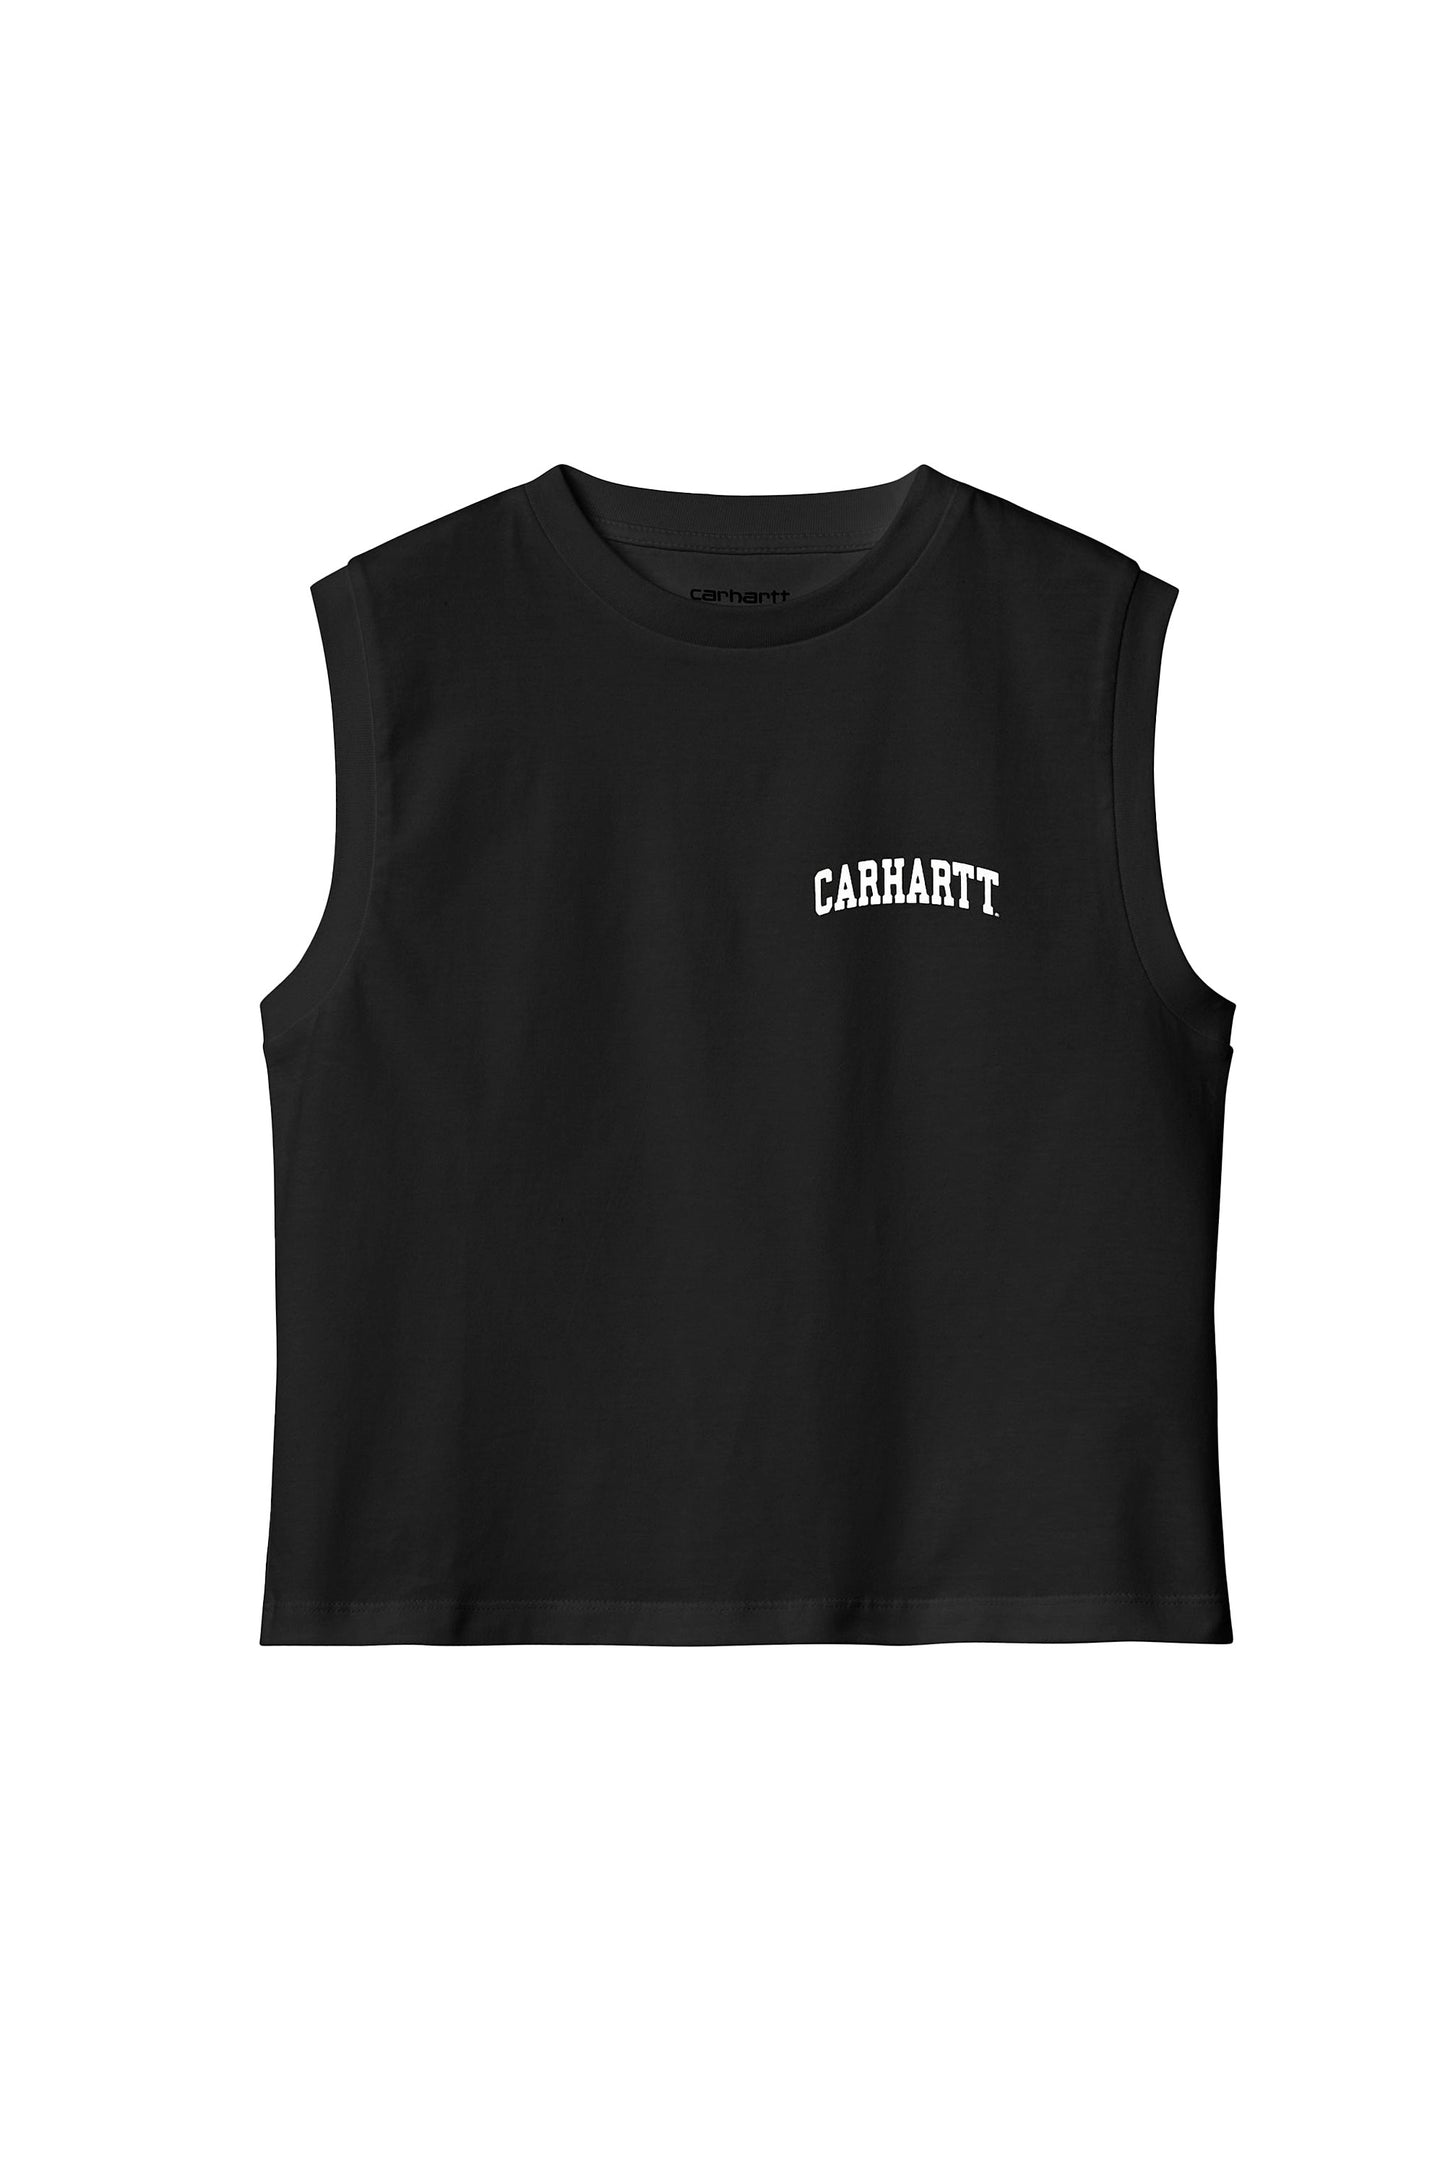 Pukas-Surf-Shop-carhartt-tee-woman-w-university-script-a-shirt-black